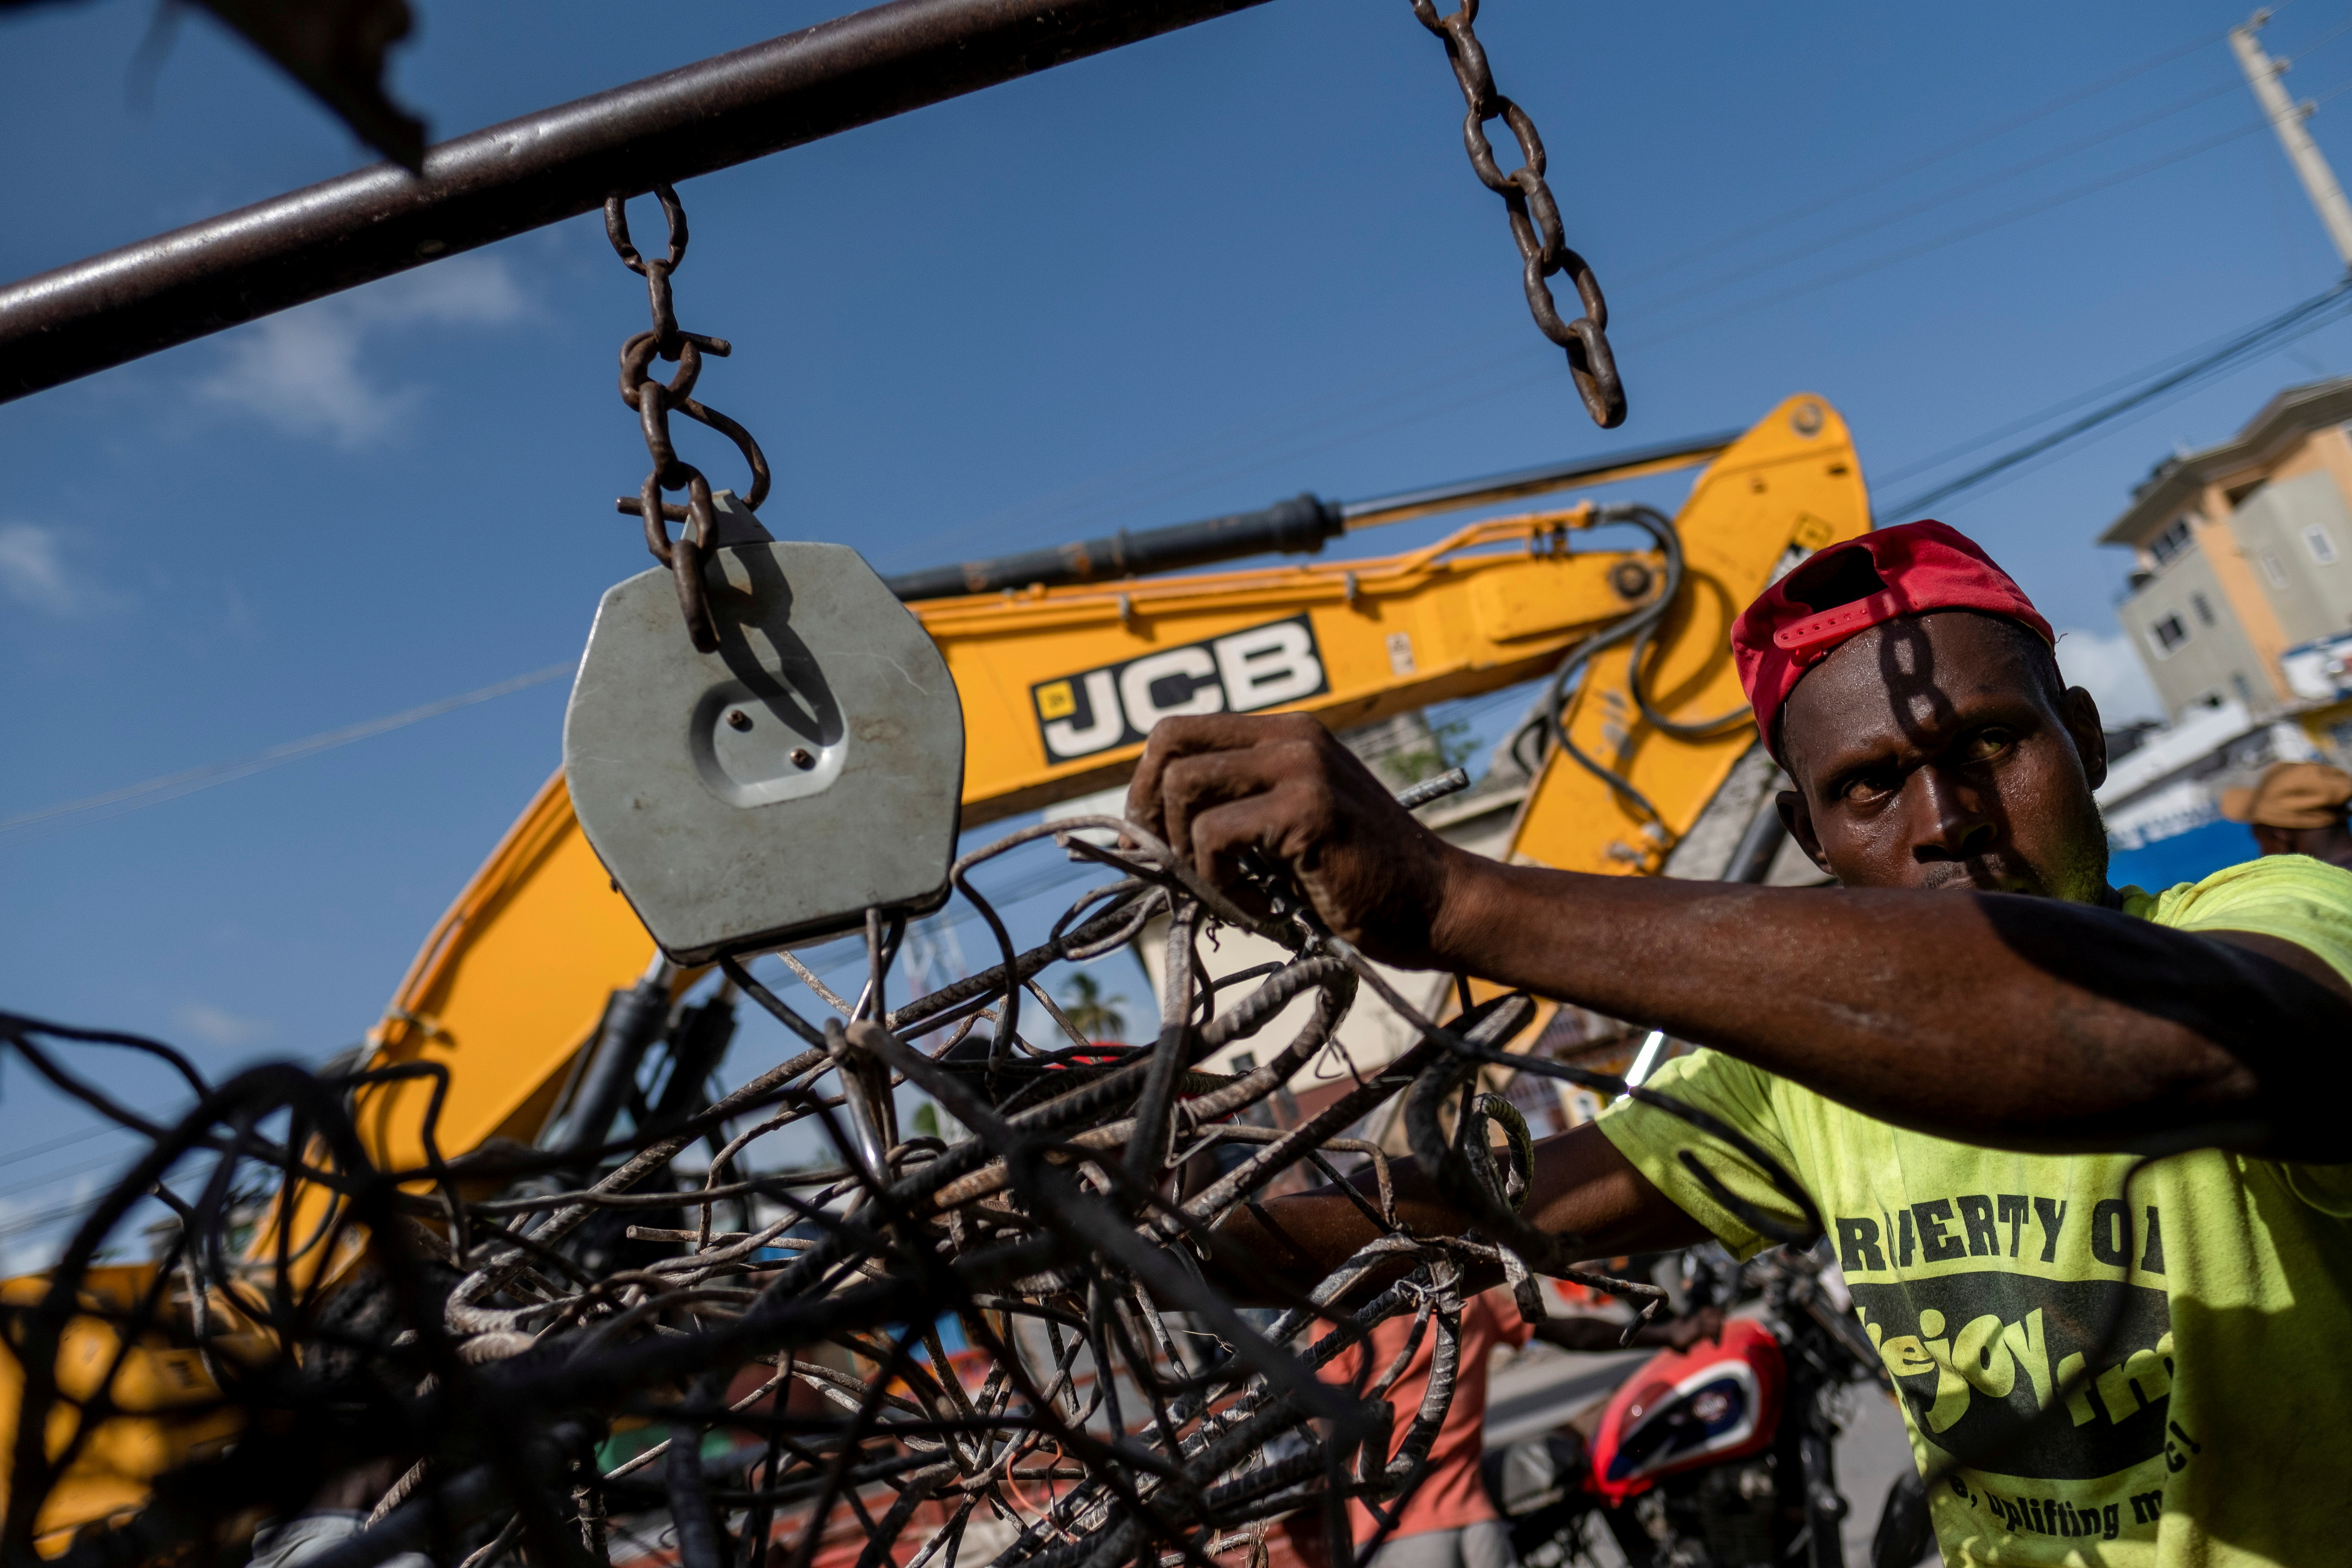 Scrap metal recycling brings cash in Haiti post-earthquake